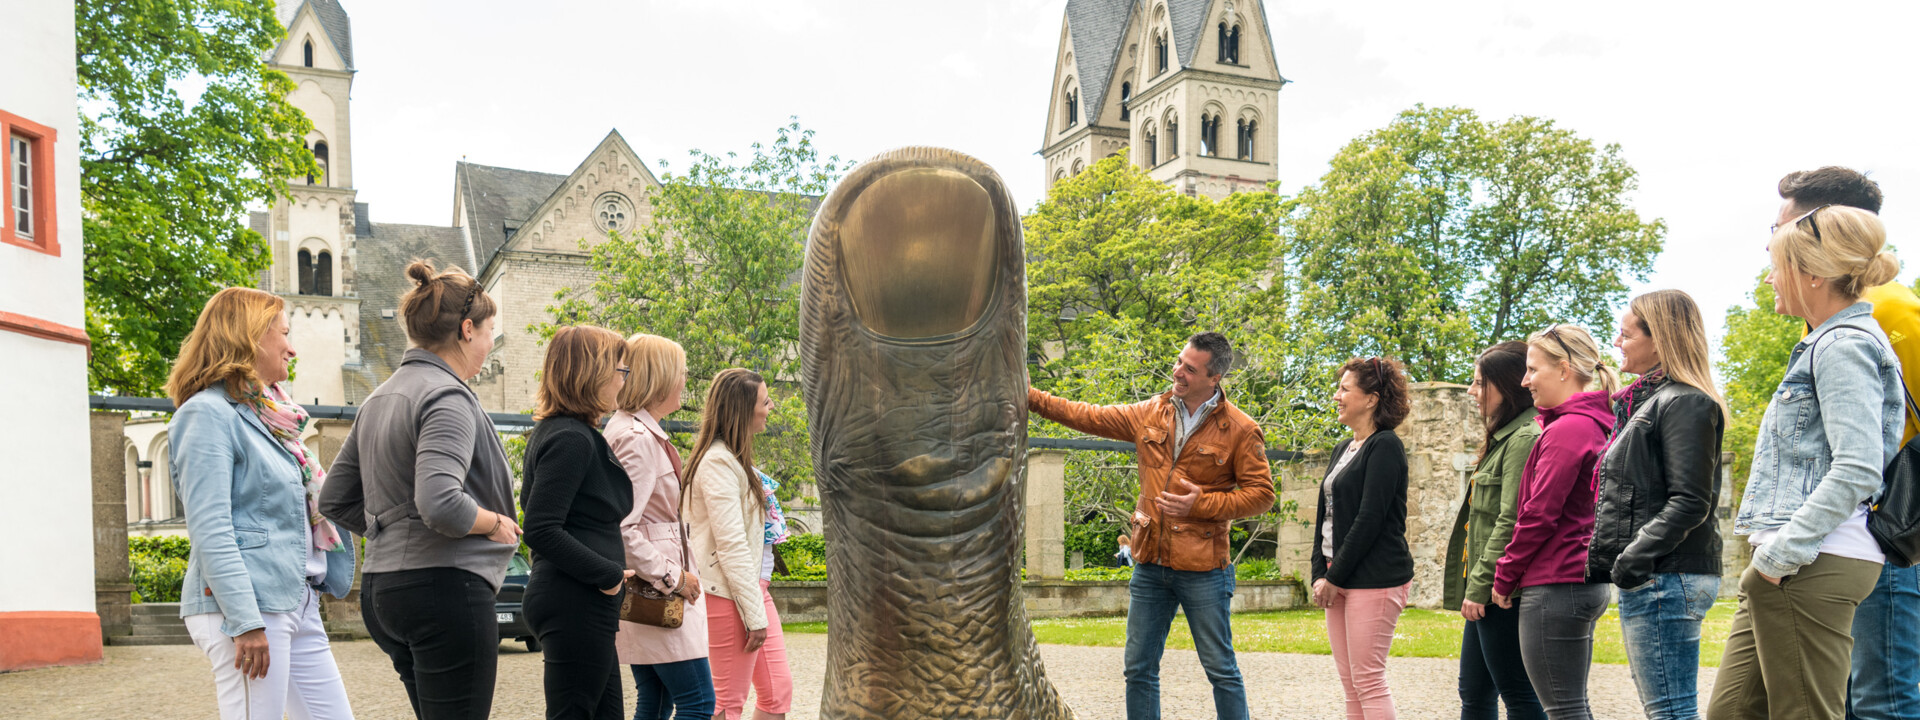 Reisegruppe hört einem Stadtführer zu, während er eine große Daumenstatue vor dem Ludwigmuseum erklärt ©Koblenz-Touristik GmbH, Dominik Ketz